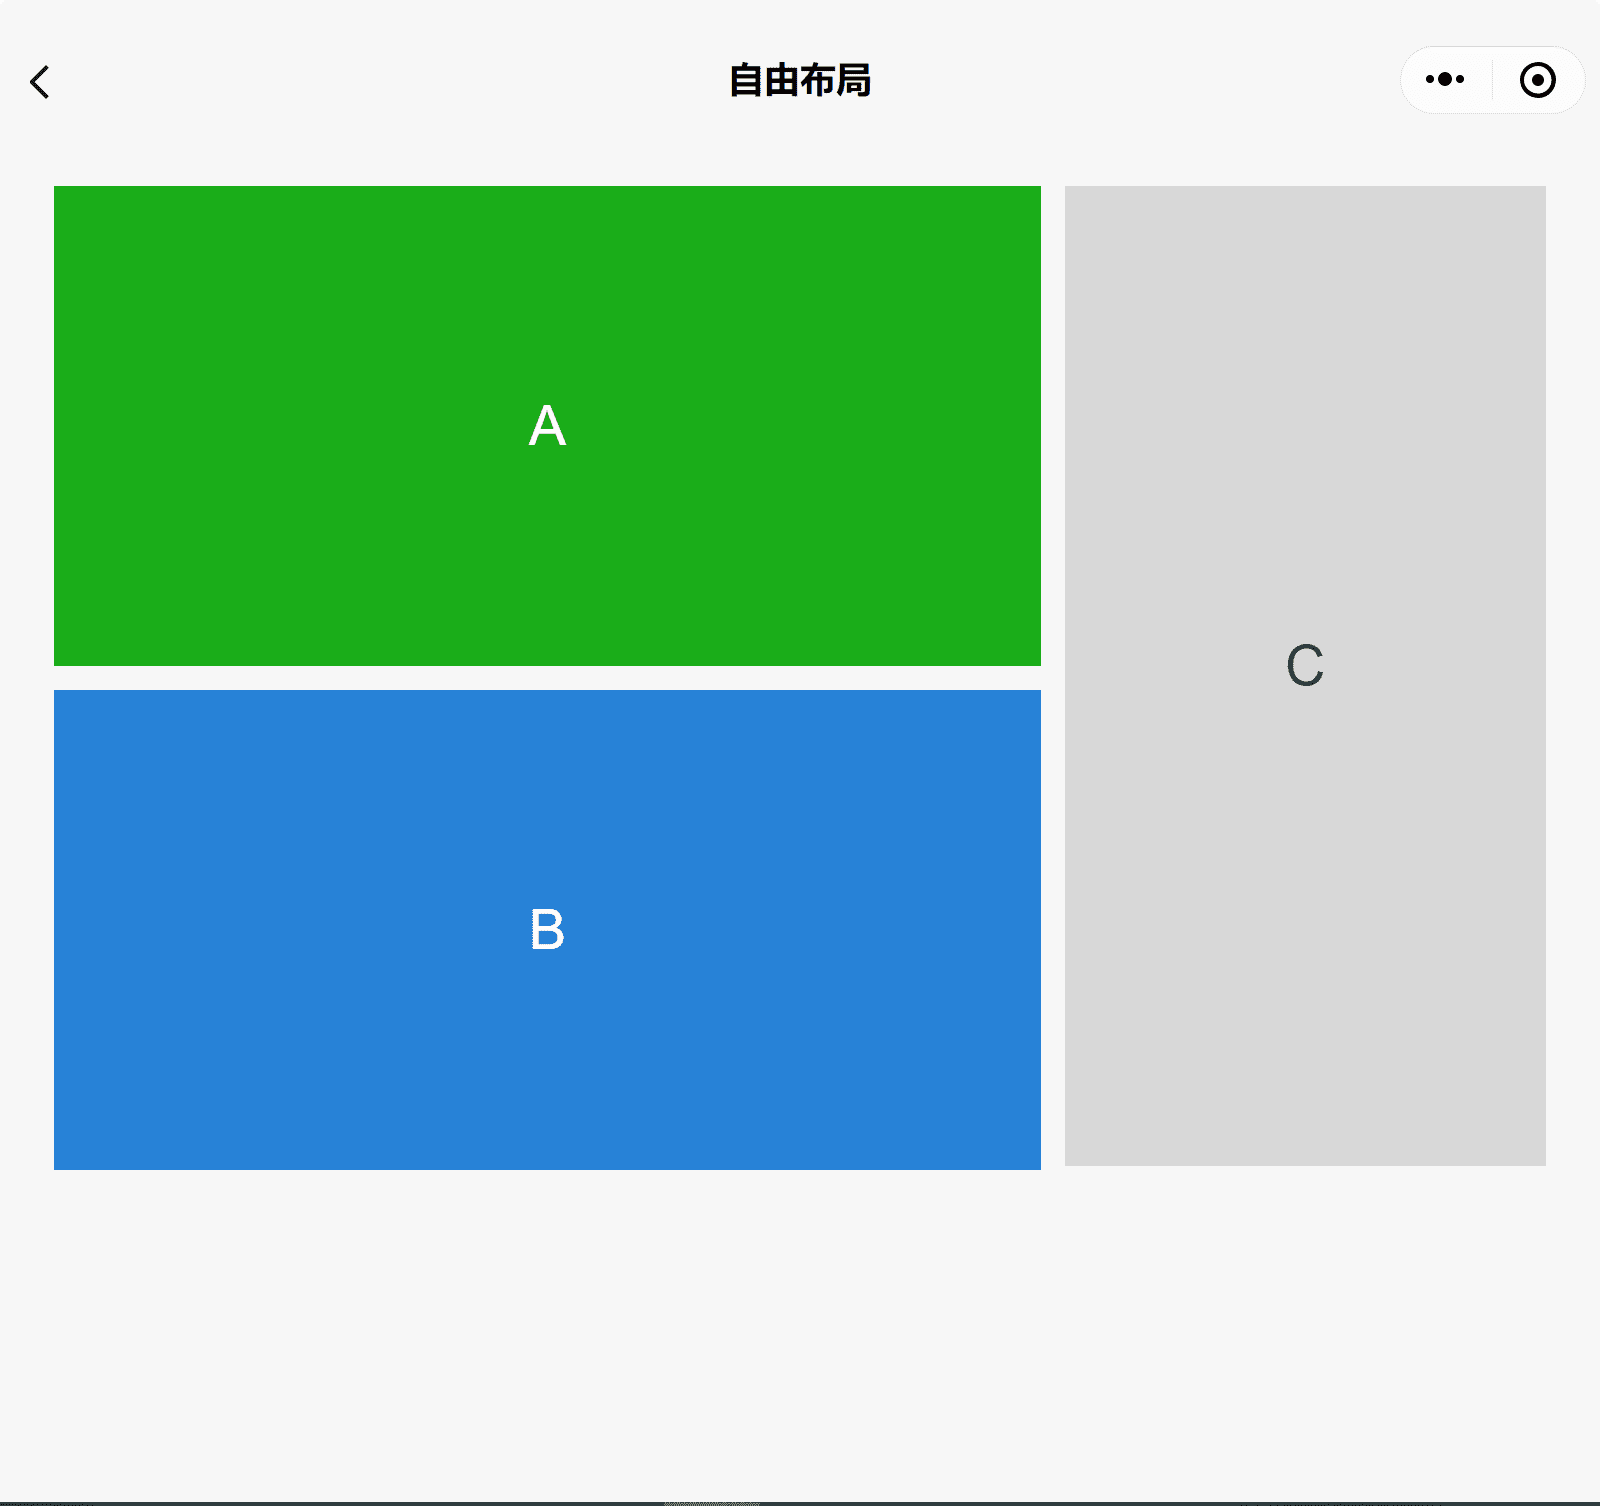 Демонстрационное приложение компонентов WeChat в широком окне показывает три поля A, B и C, причем A расположен поверх B и C сбоку.